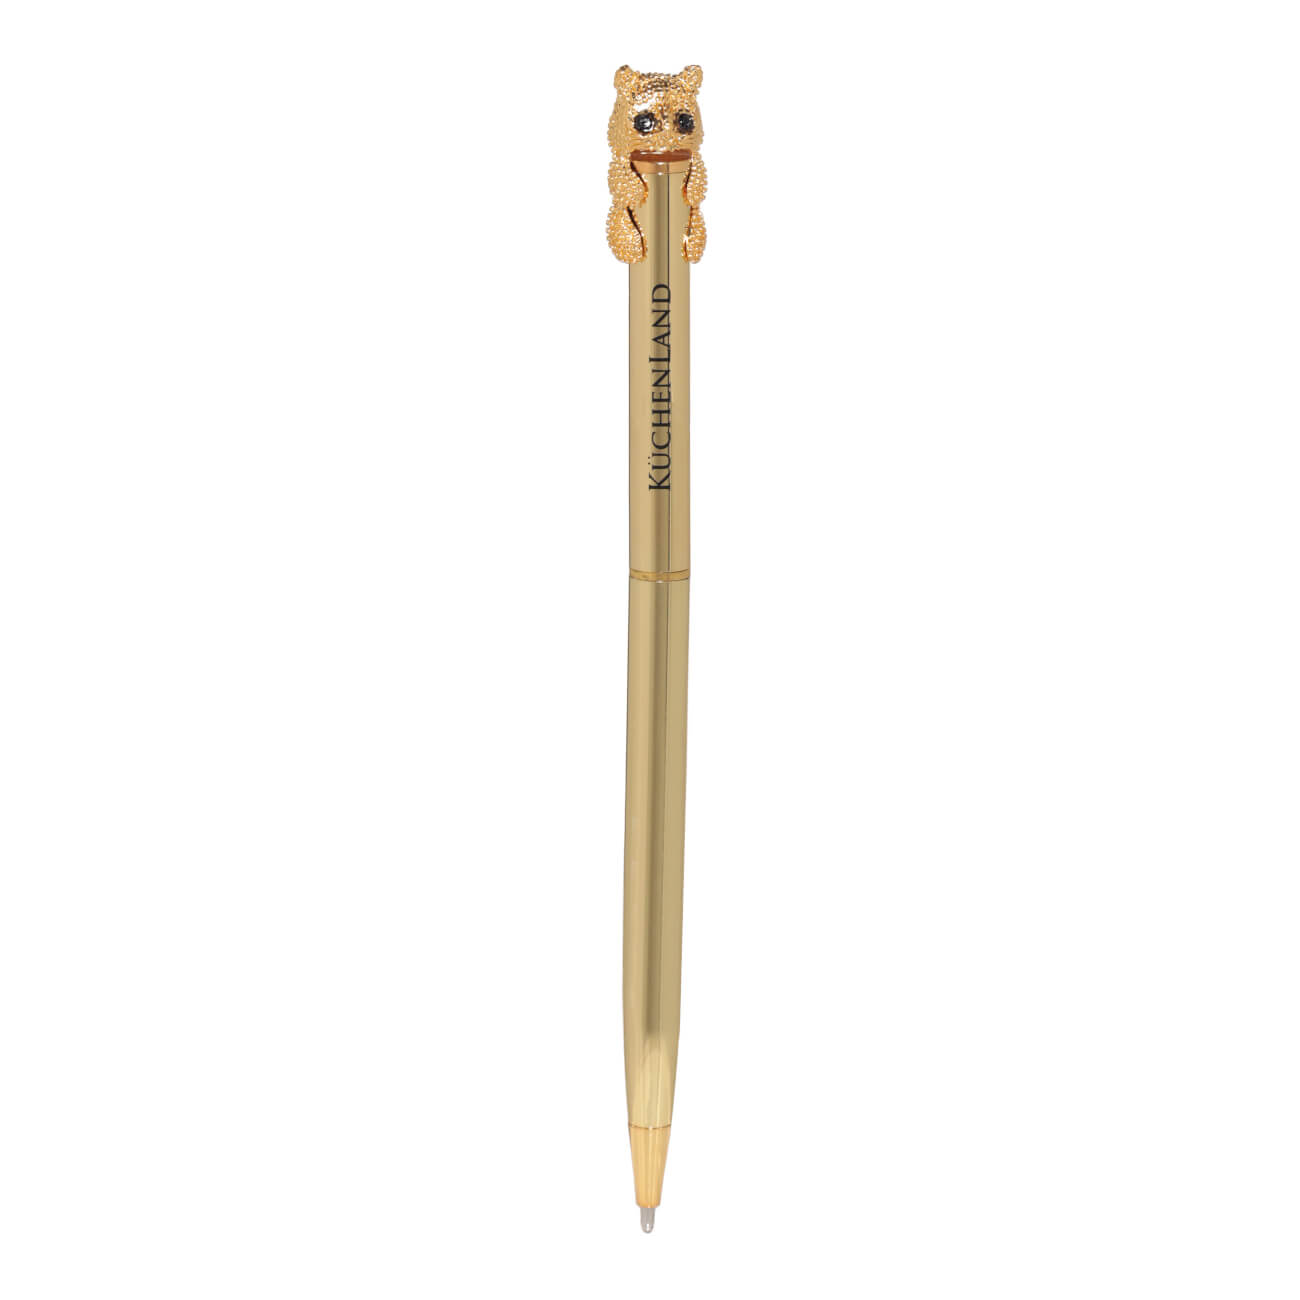 Ручка шариковая, 14 см, с фигуркой, золотистая, Кот, Draw figure неавтоматическая шариковая ручка kores